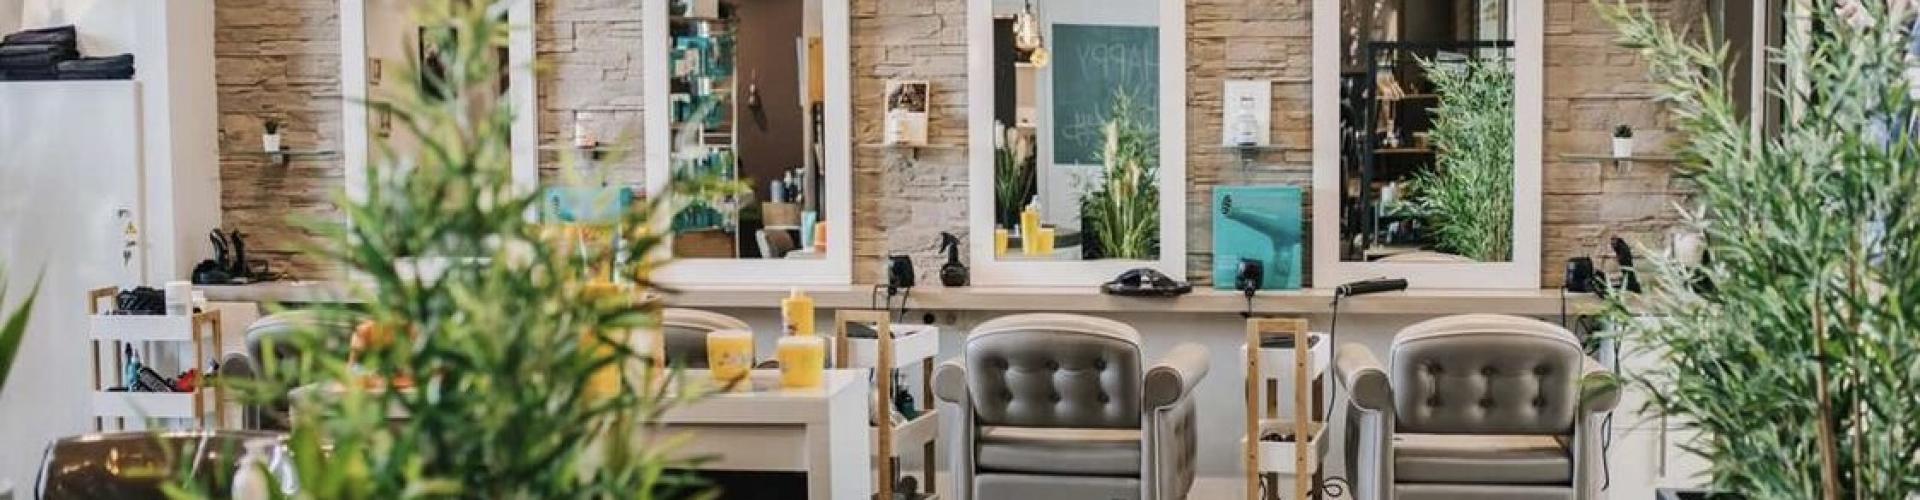 Lounge Coiffure - 2 salons de coiffure (Pont l'Évêque & Lisieux, Calvados) - Prestataire de Mariage en Normandie